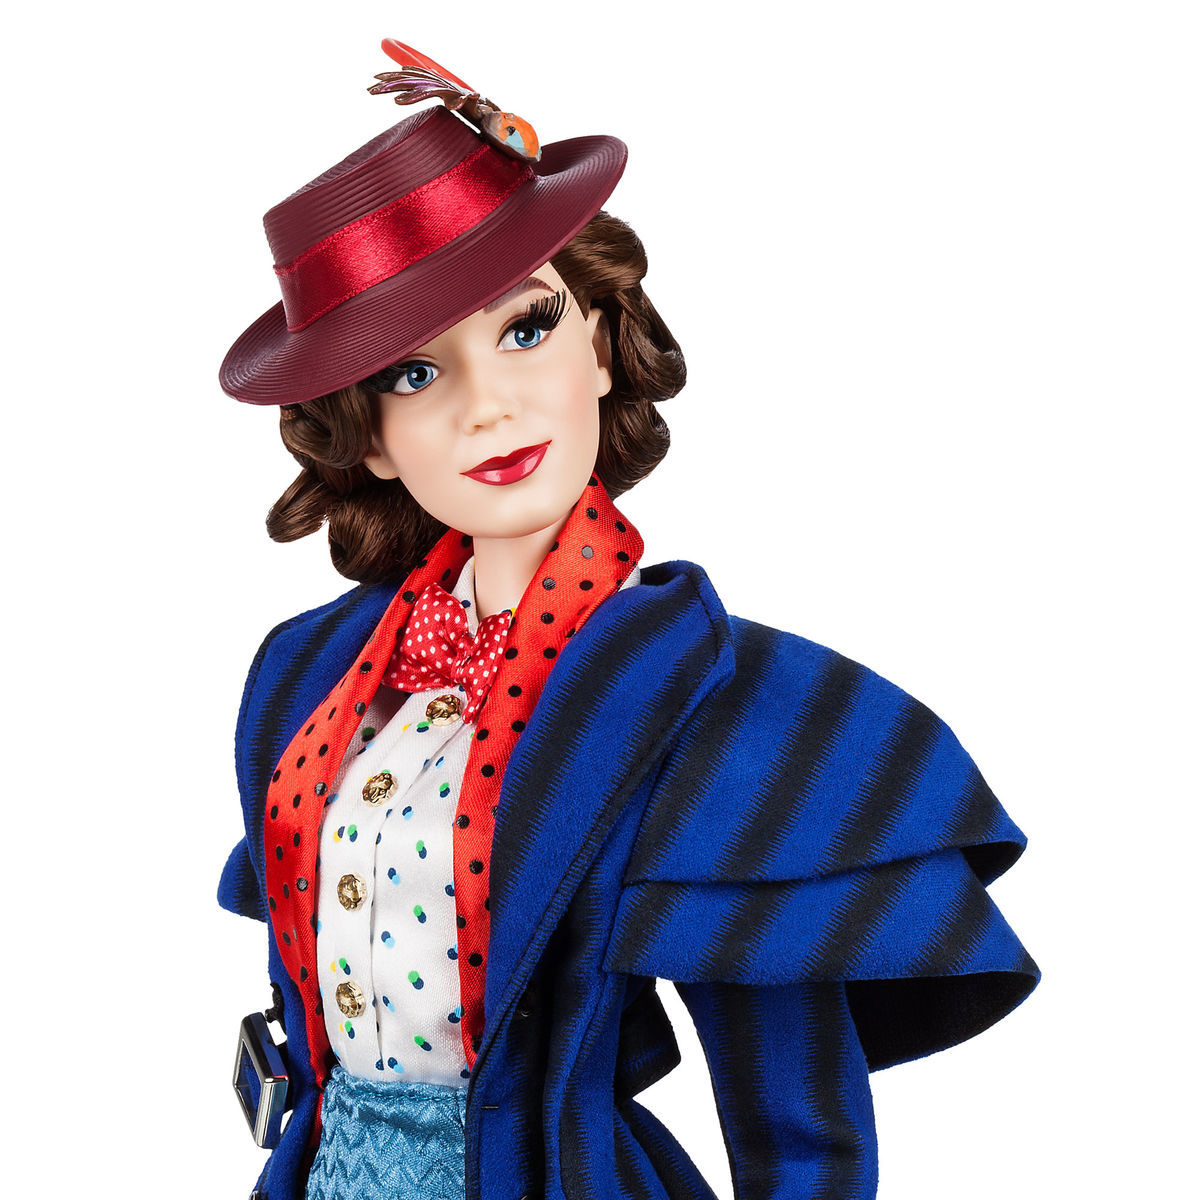 mary poppins doll 2018